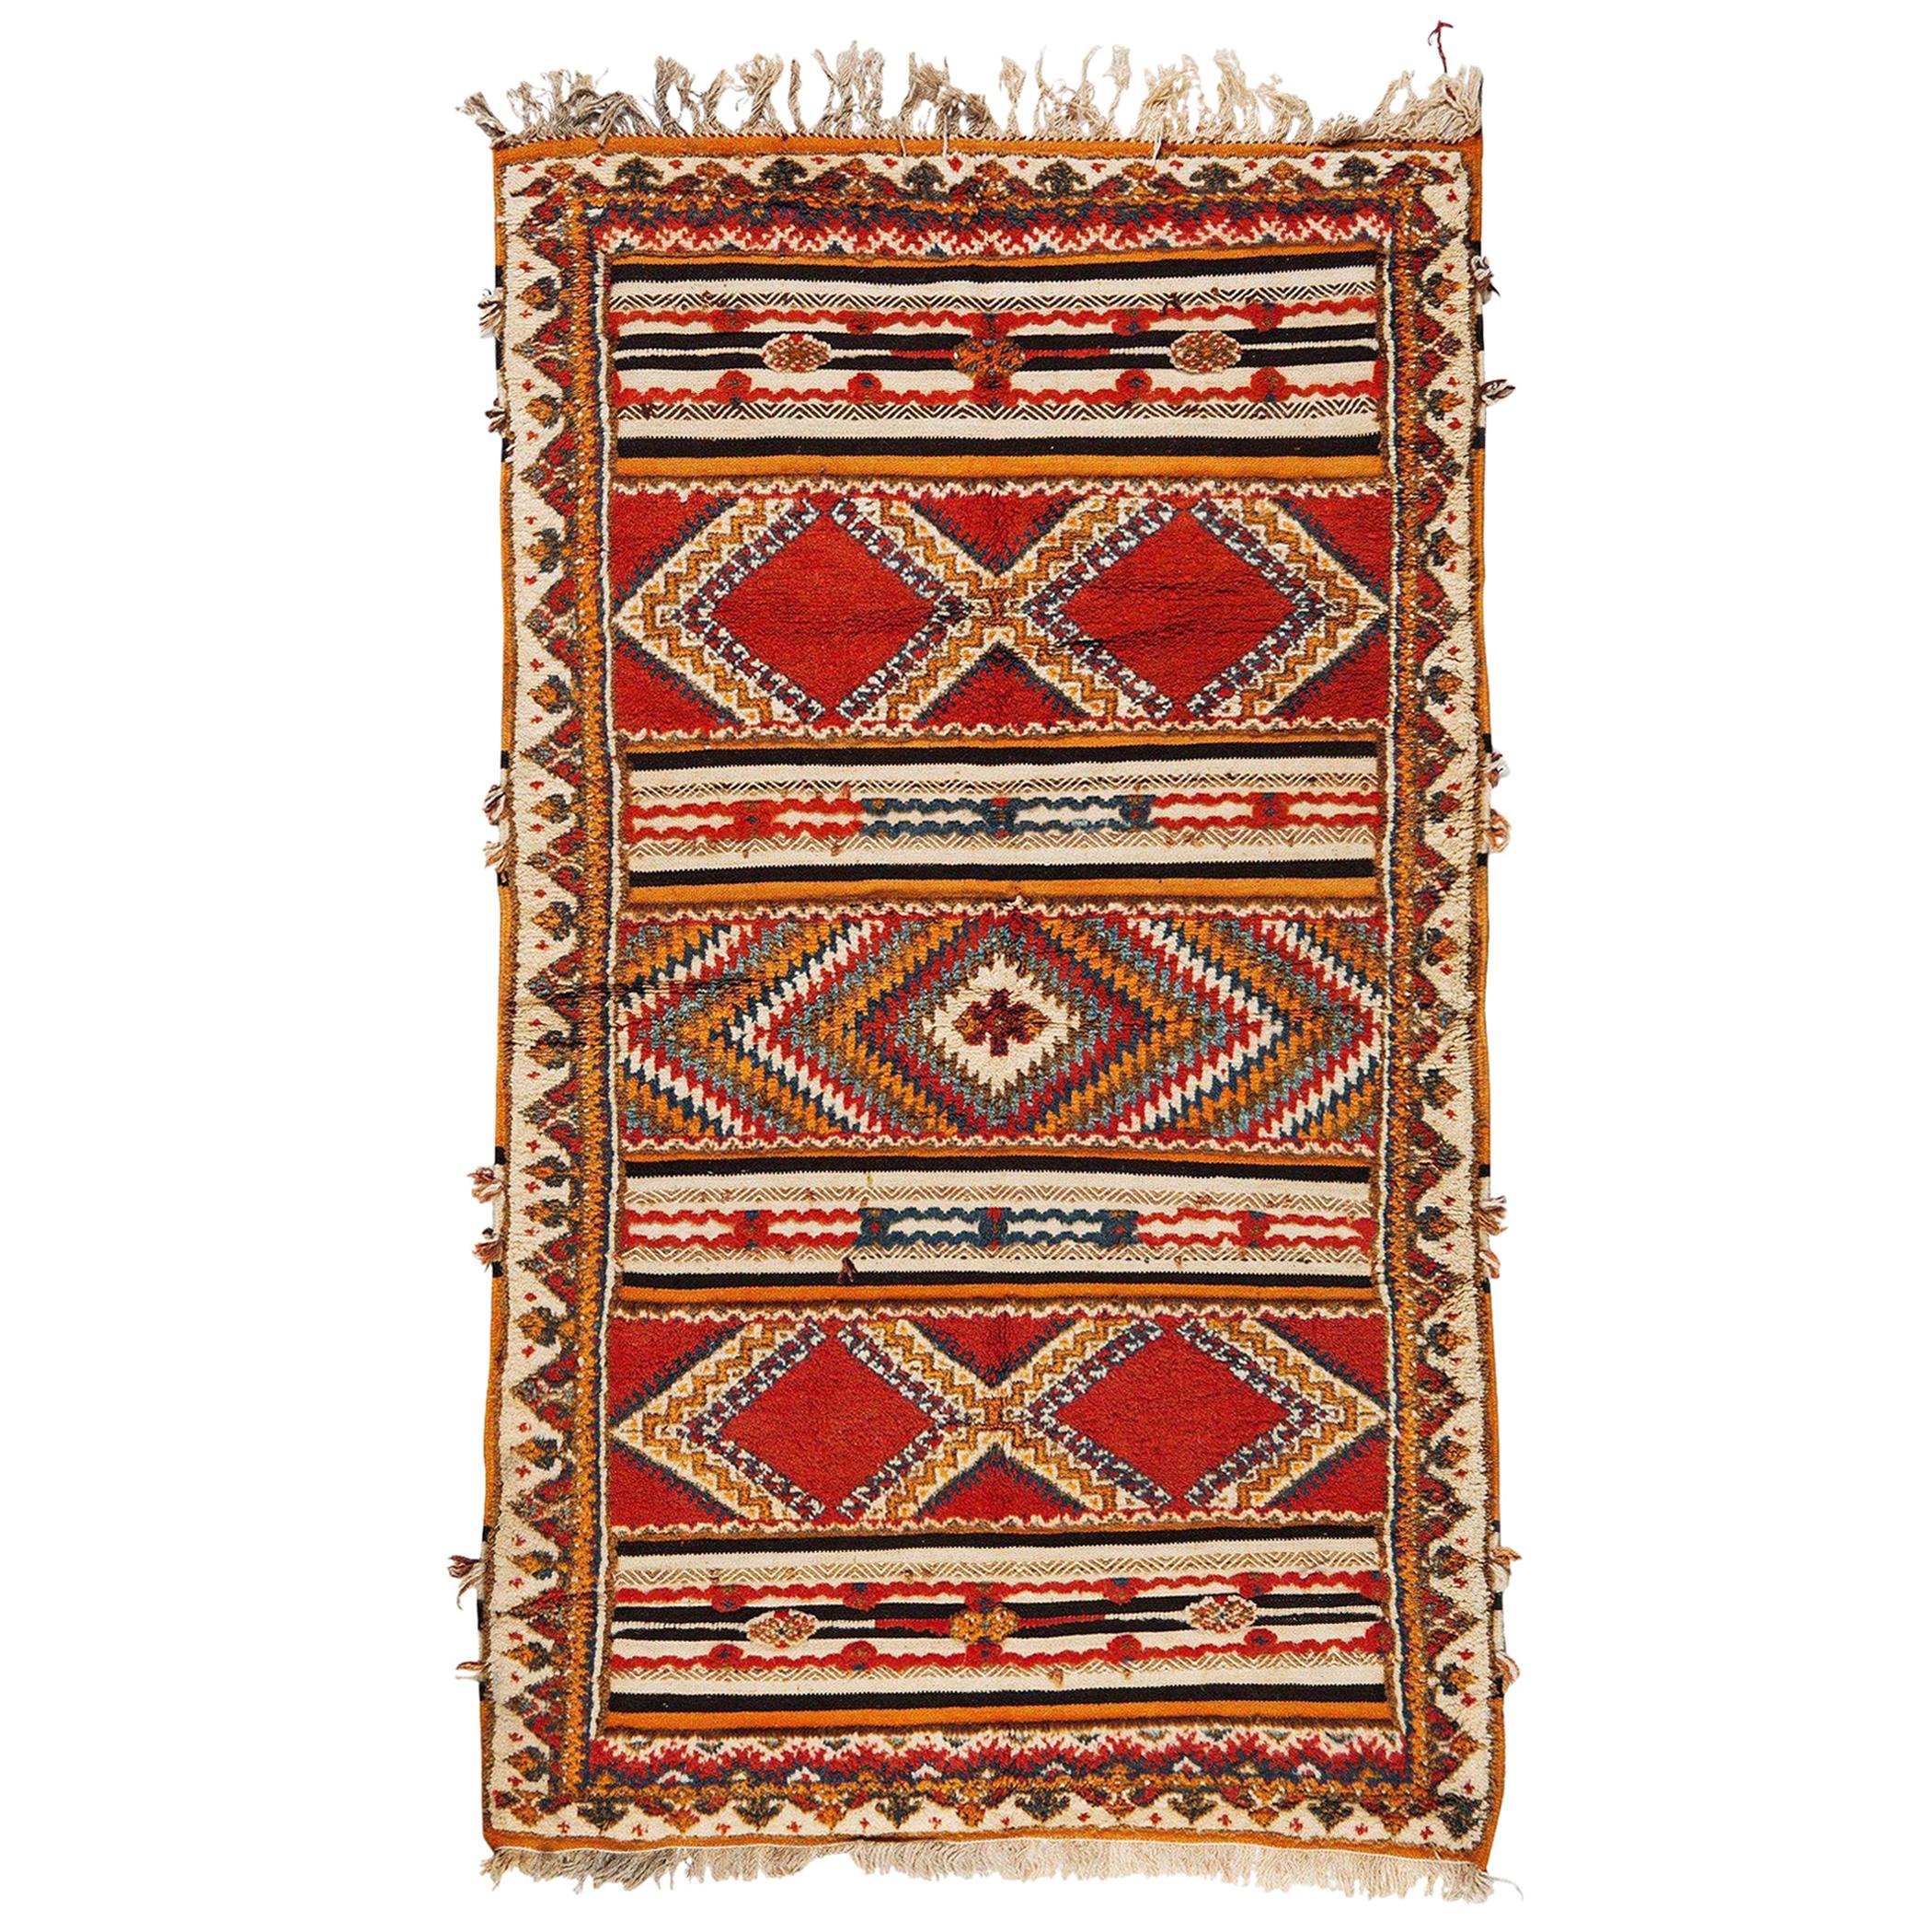 Marokkanischer handgewebter Vintage-Teppich oder Teppich aus Wolle mit abstrakten Diamantmuster